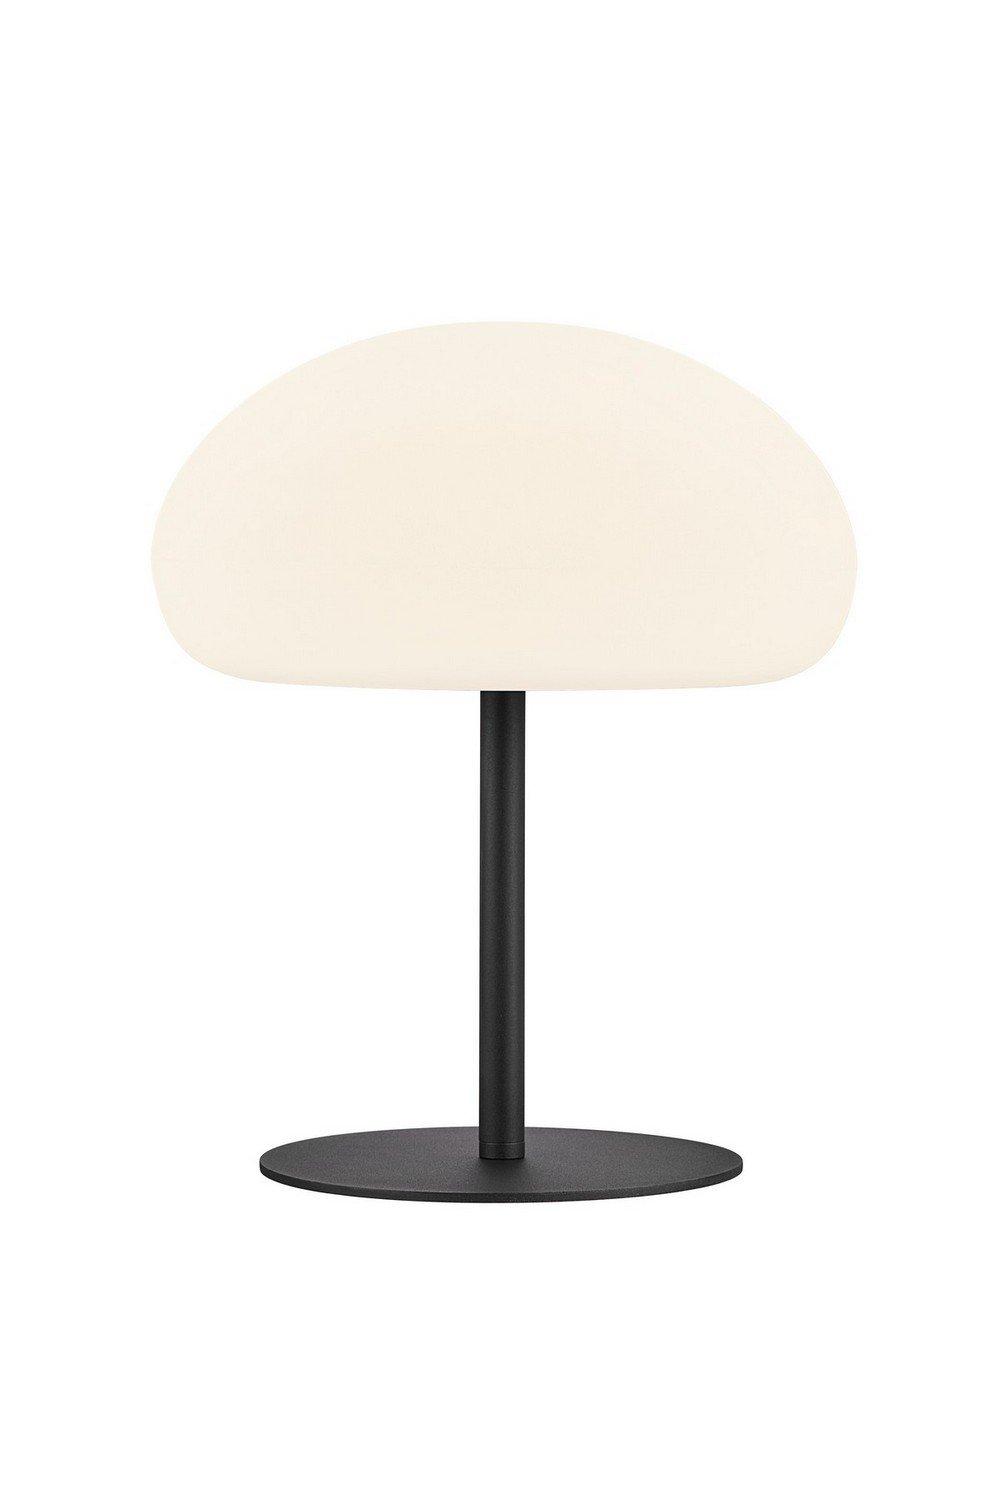 Sponge 34cm LED Dimmable Globe Table Lamp White IP65 2700K